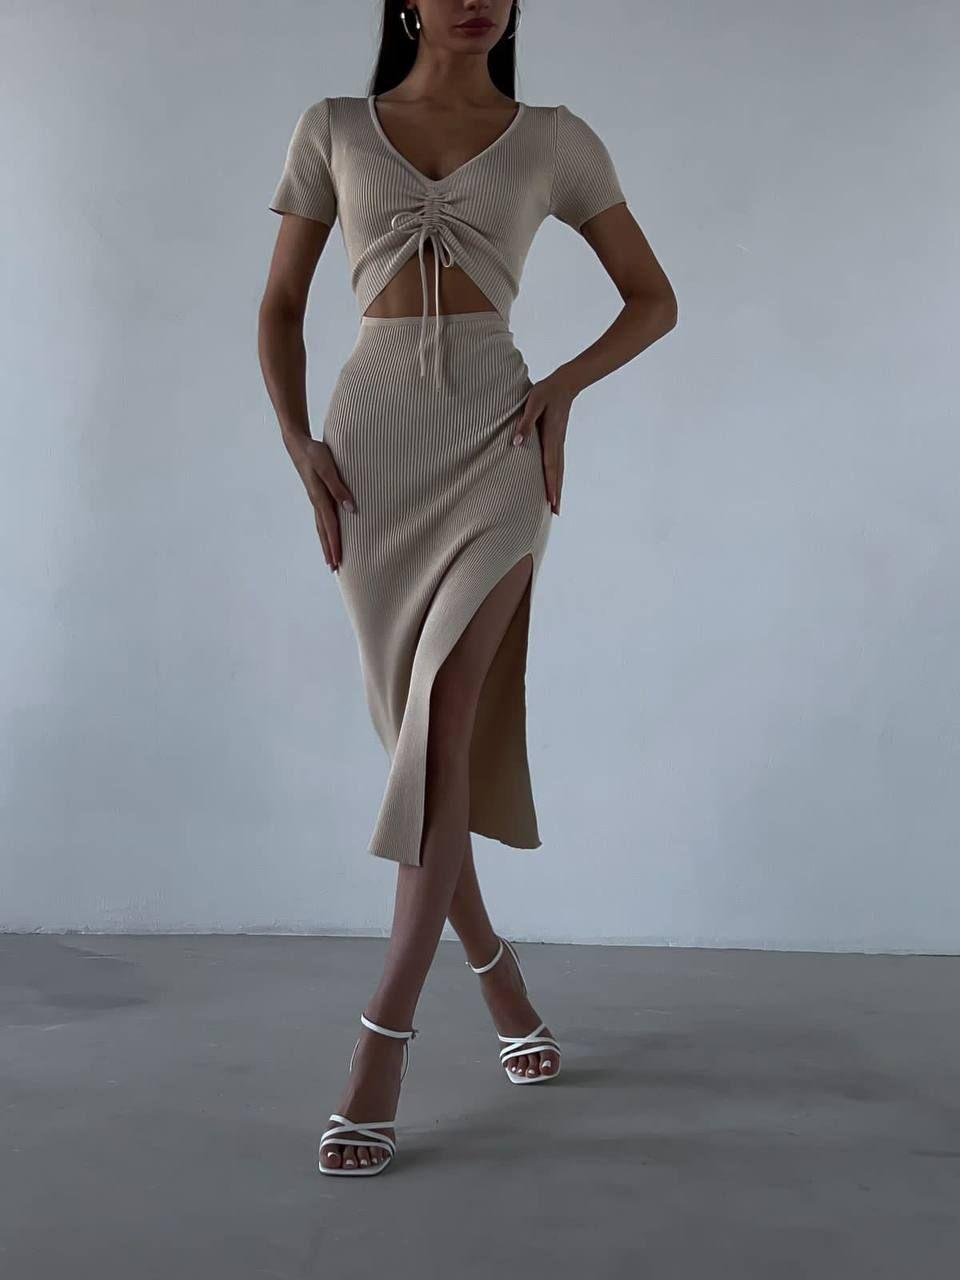 Жіноча довга сукня в обтяжку стильна модна підкреслює фігуру відкрита спина шнурівка в рубчик короткий рукав